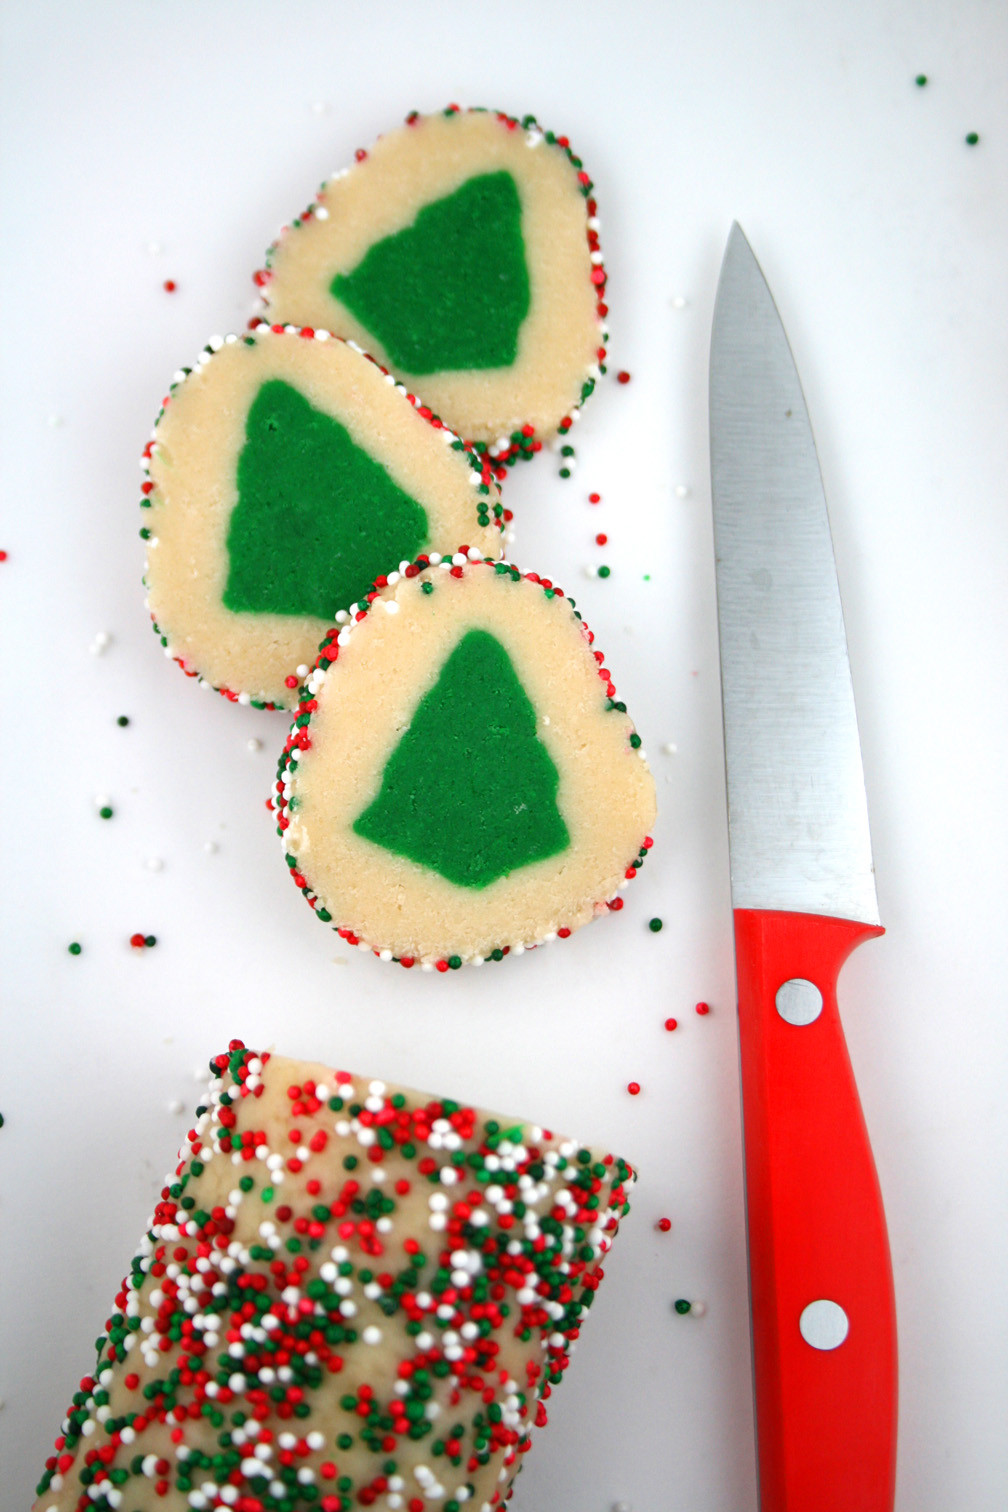 Slice And Bake Christmas Cookies
 Slice n Bake Christmas Tree Cookies Mom Loves Baking